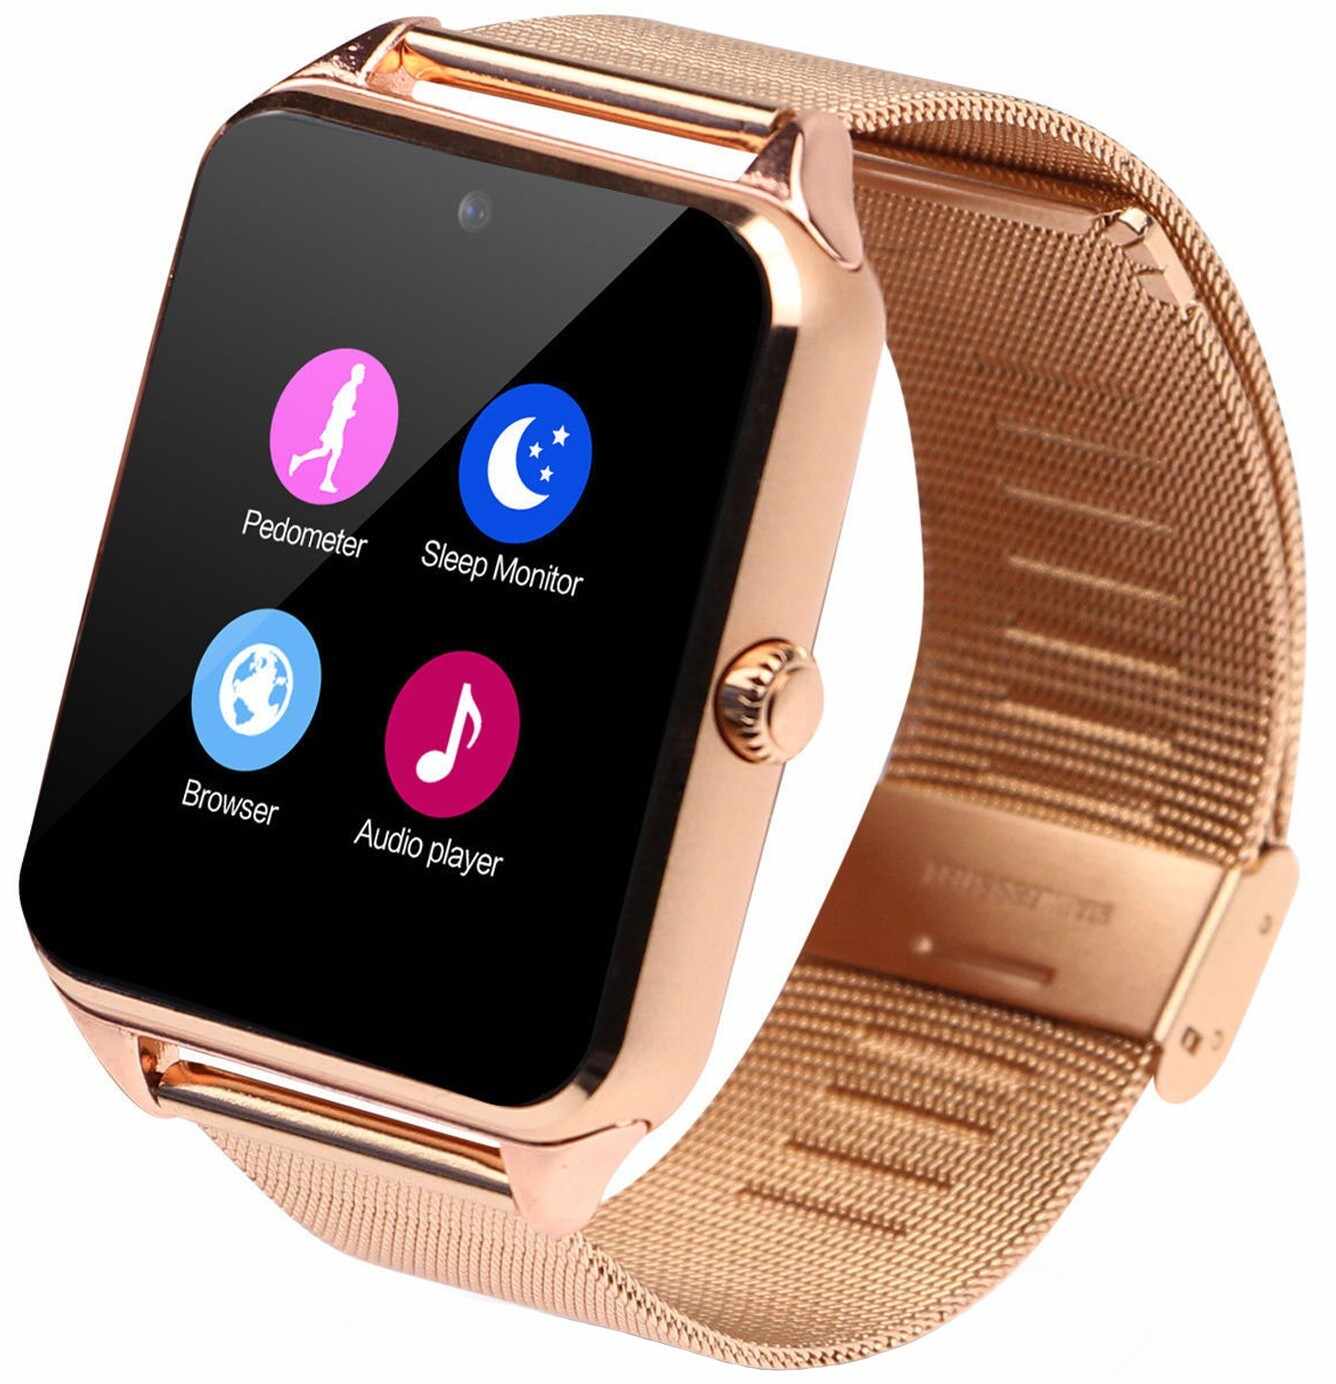 Ceas Smartwatch cu Telefon iUni GT08s Plus, Curea Metalica, Touchscreen, BT, Camera, Notificari, Gold